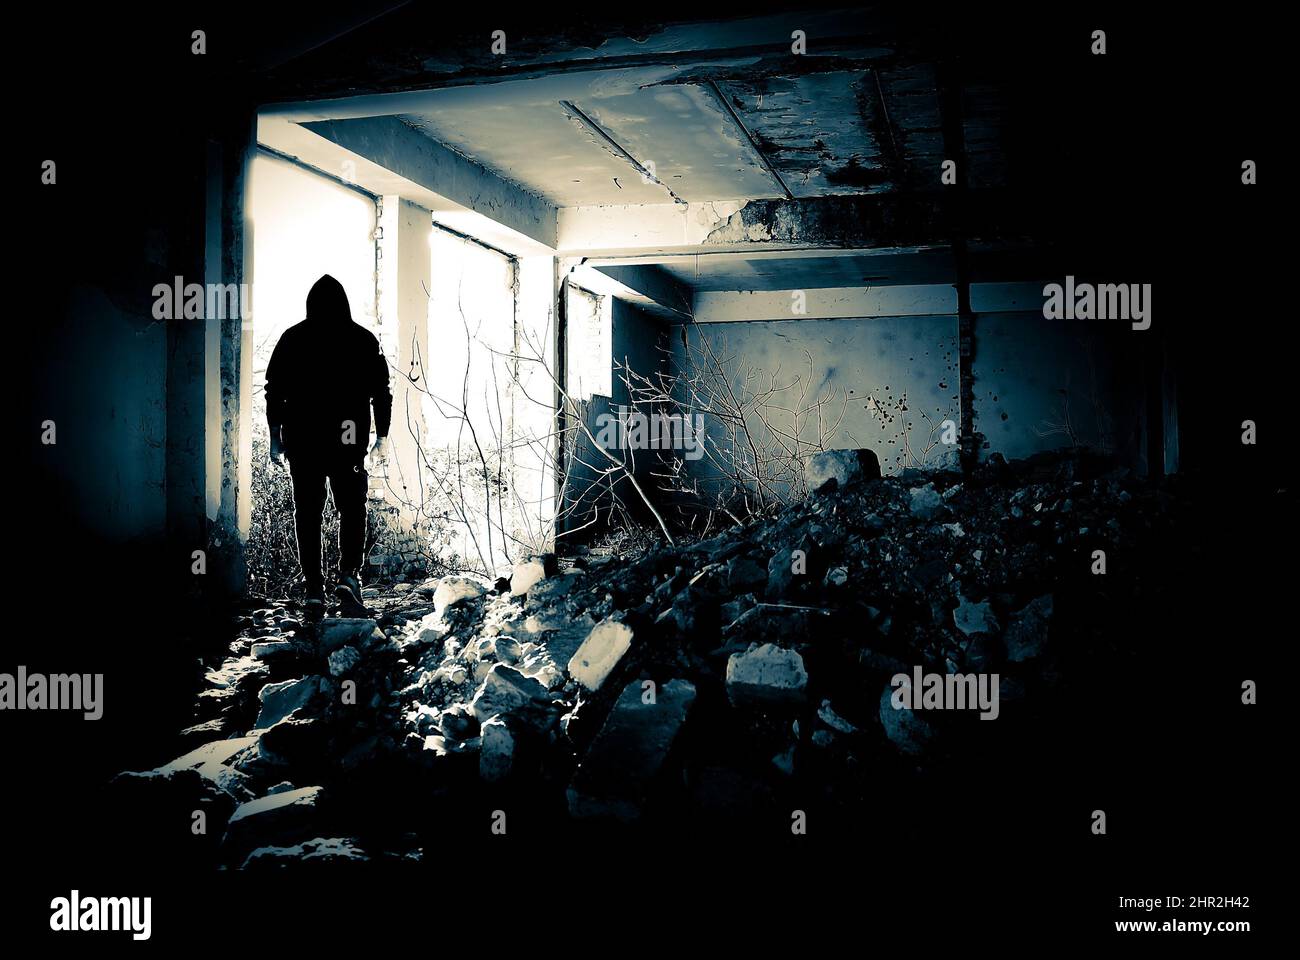 Silhouette humaine noire dans une porte. Silhouette humaine dans un endroit abandonné et en ruines se déplaçant à la lumière vive. Banque D'Images